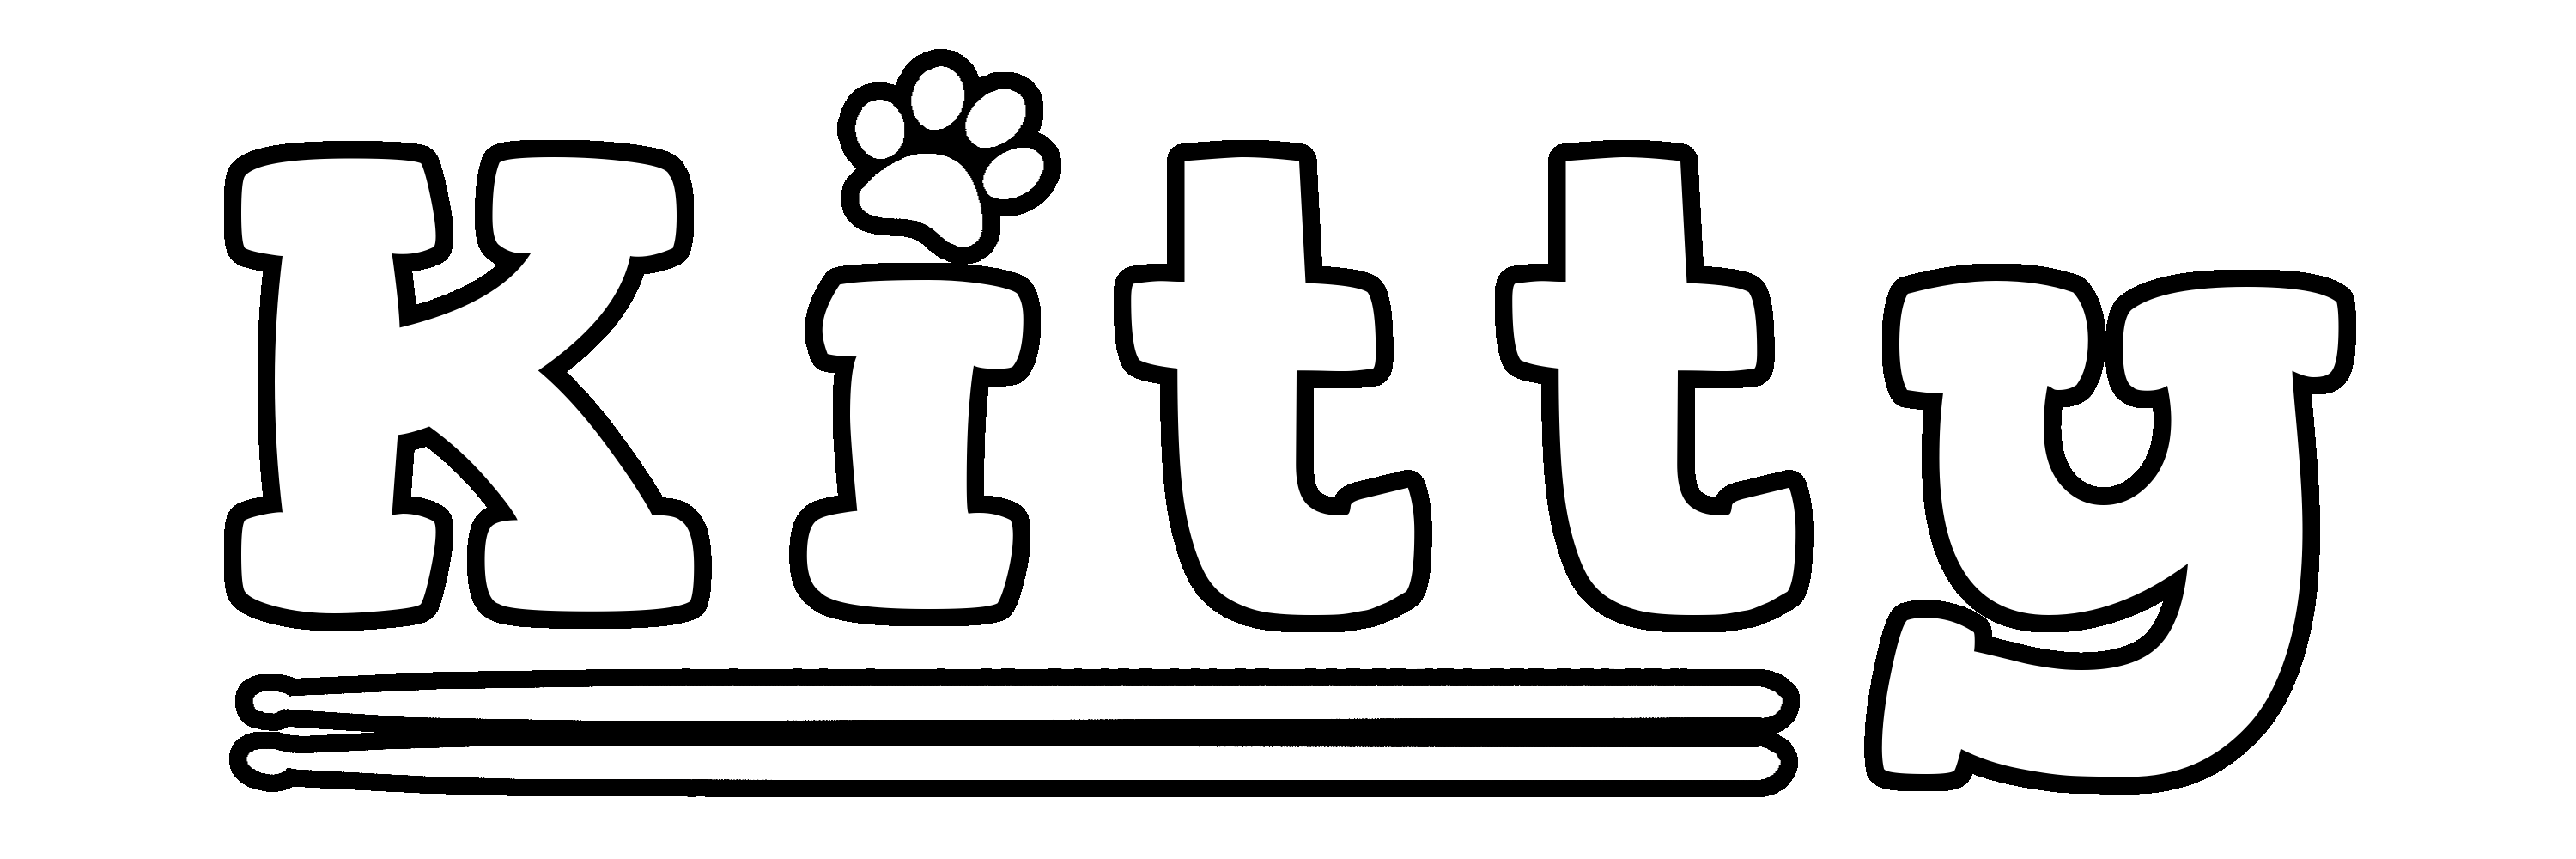 kits:kitty-logo.png